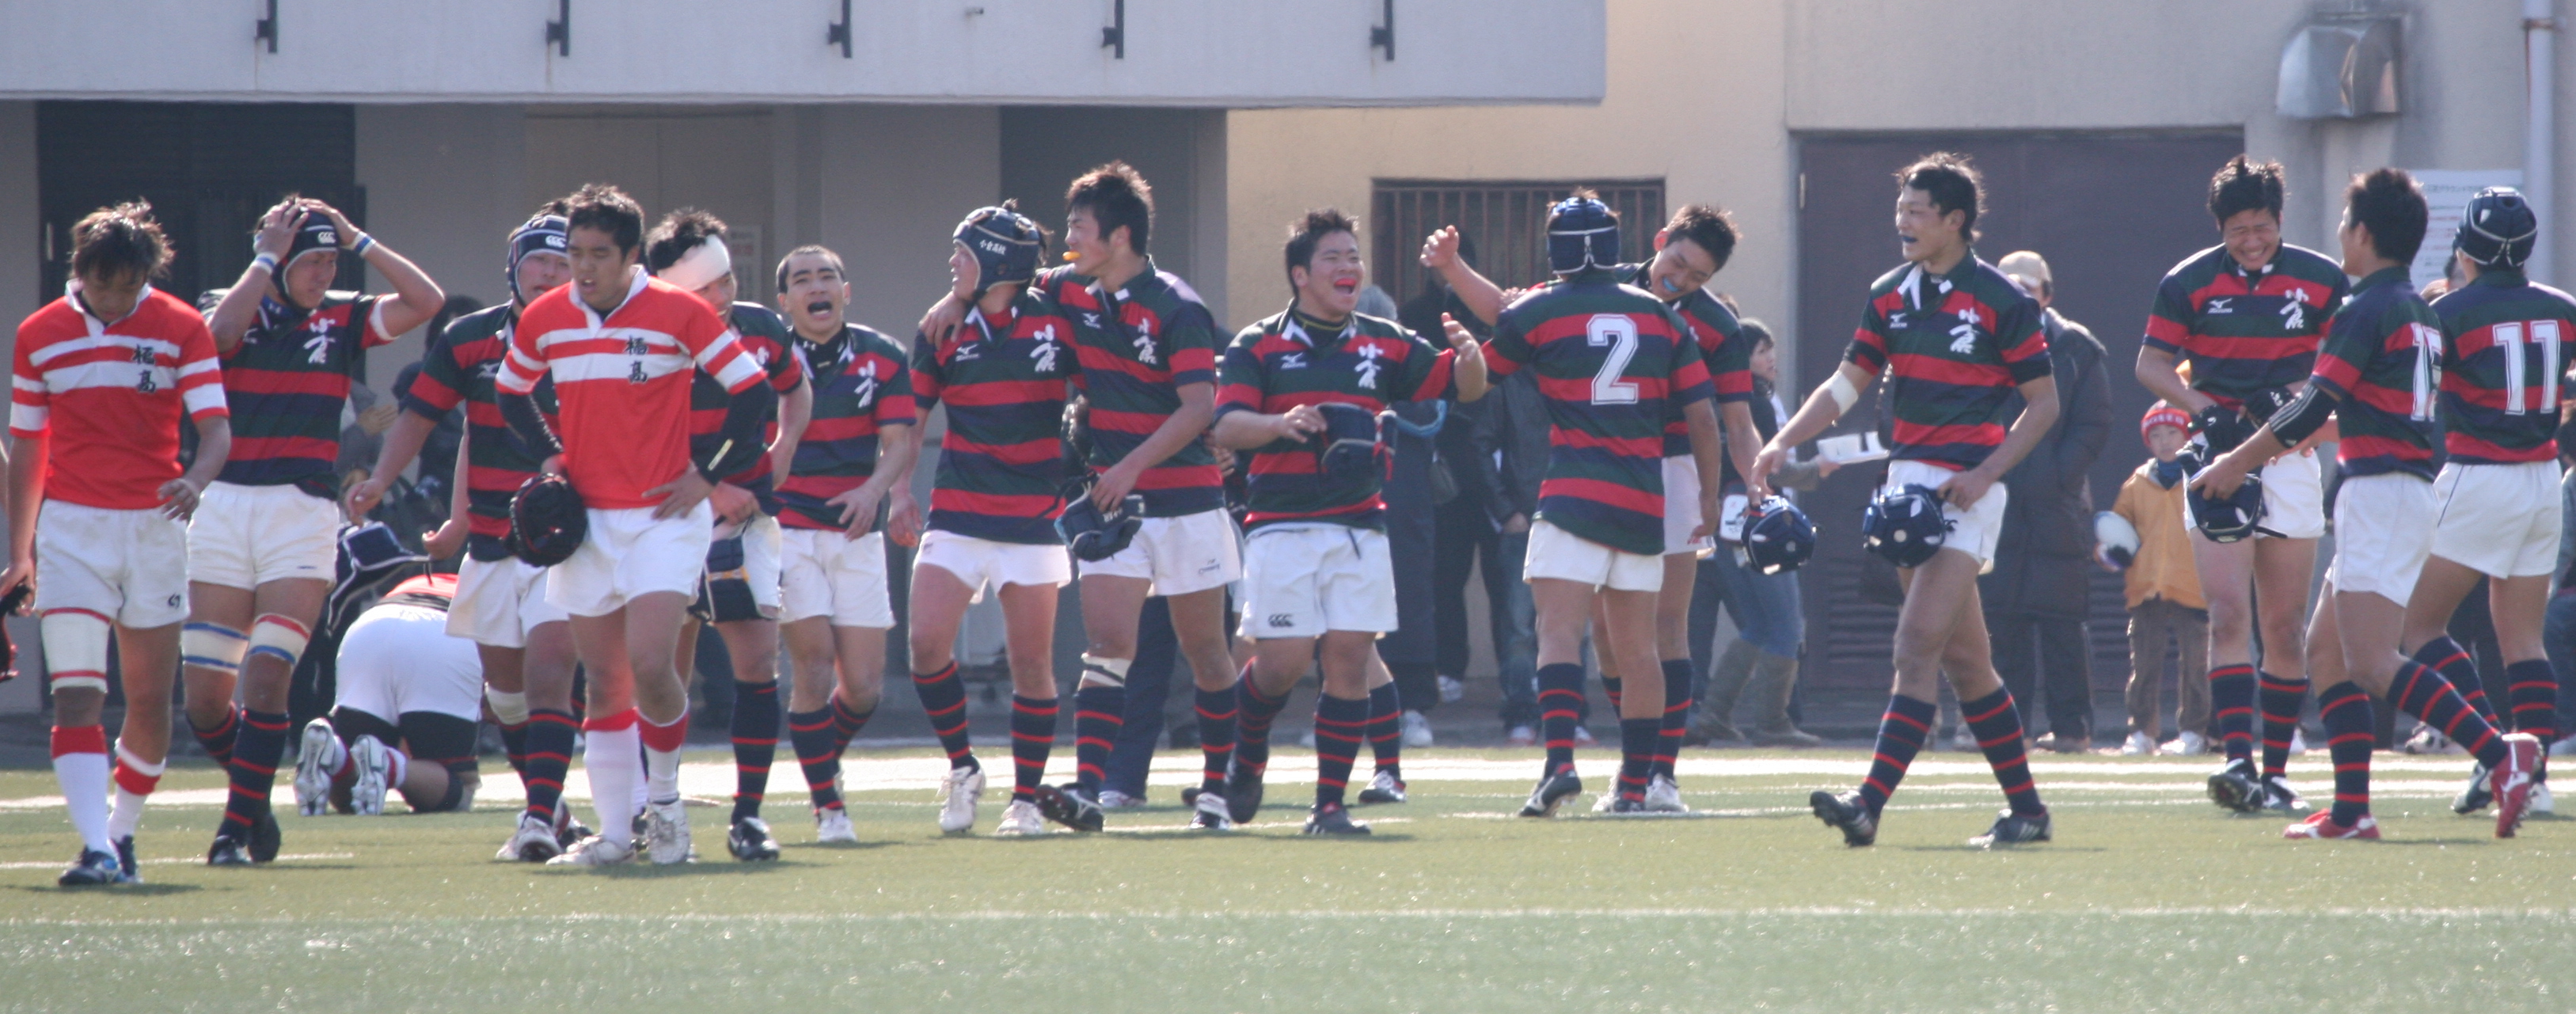 http://kokura-rugby.sakura.ne.jp/2010.1.24-I-2.JPG